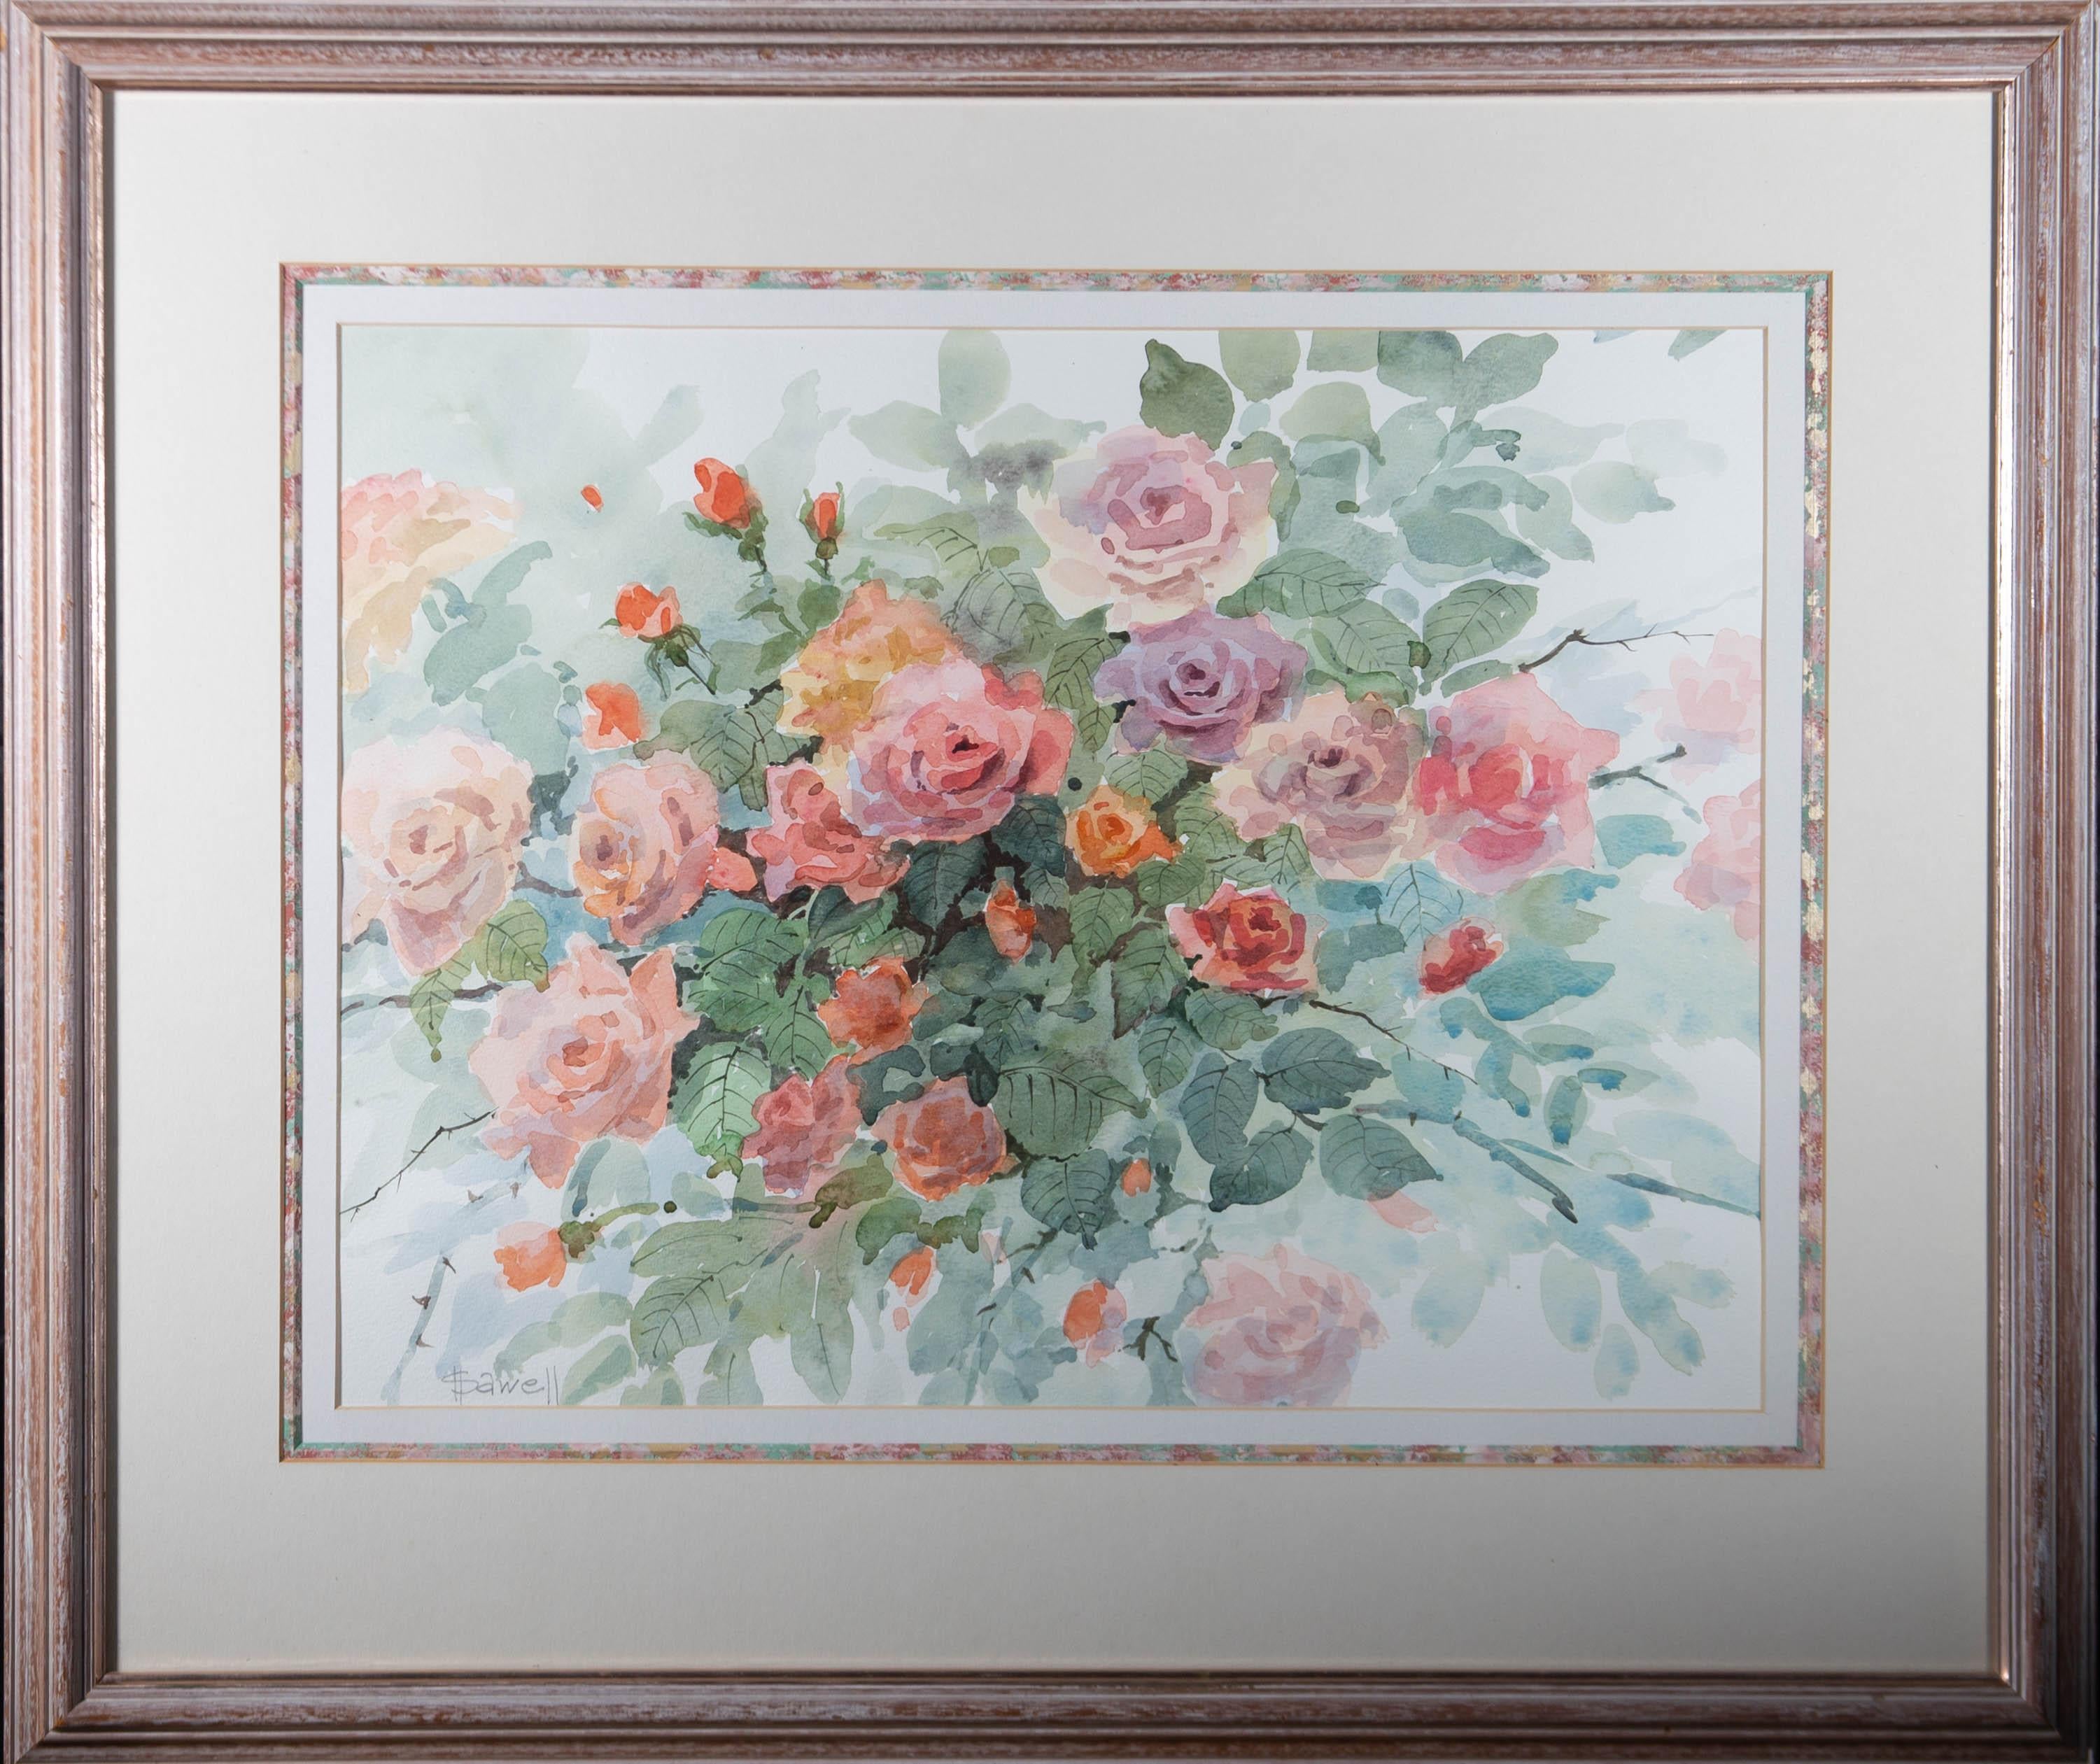 Ein bezauberndes Aquarell der Künstlerin Shirley Harrell, das ein Rosenstillleben zeigt. Signiert in der linken unteren Ecke. Auf der Revere ist eine Künstlerbiografie angebracht. Gut präsentiert in einem dreifachen Passepartout und in einem